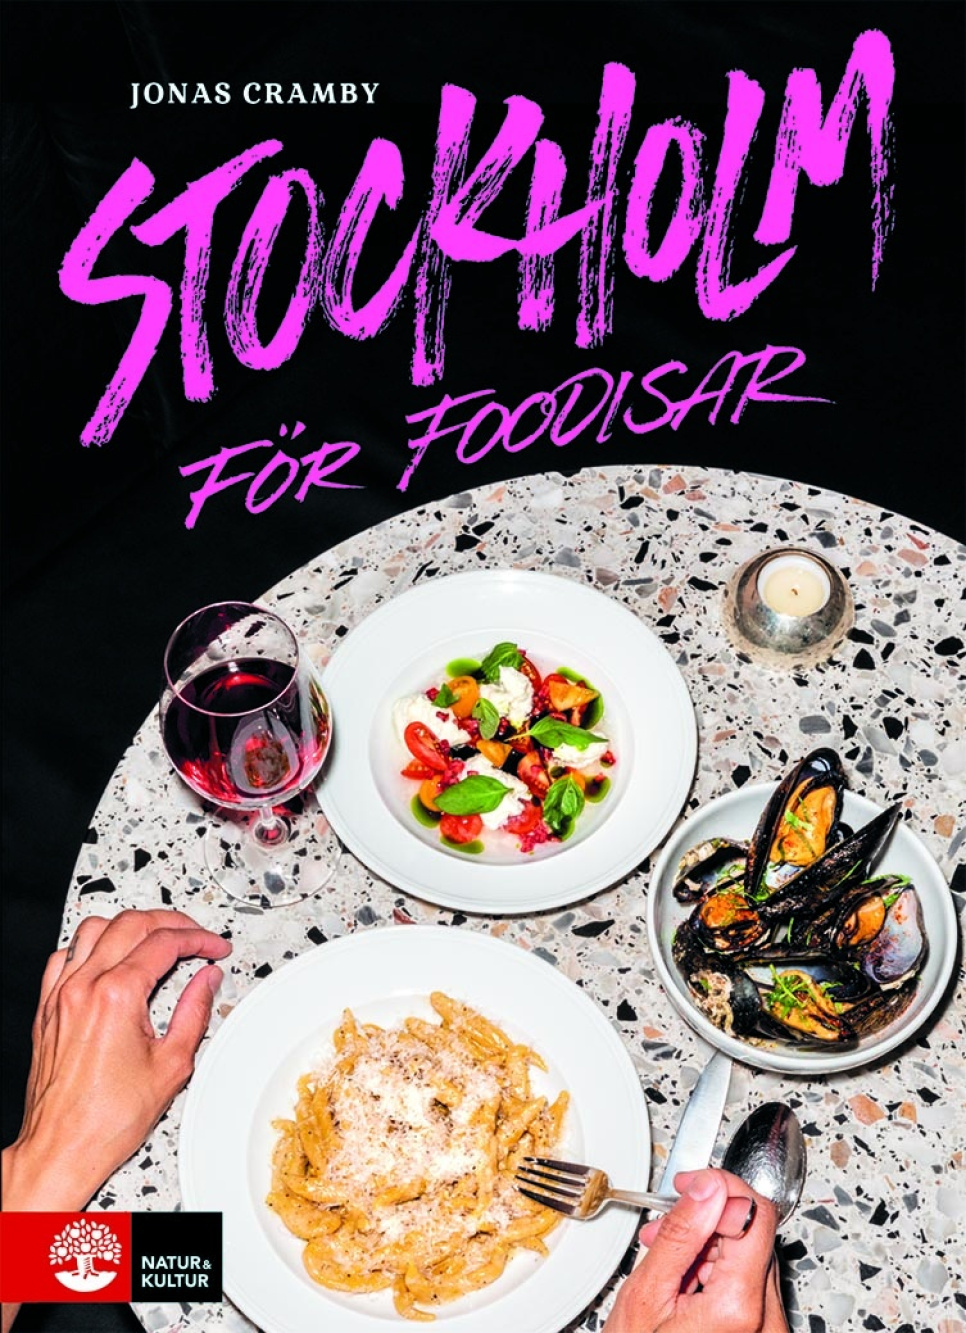 Stockholm für Foodisar von Jonas Cramby in der Gruppe Kochen / Kochbücher / Prominente Köche & TV-Sendungen bei The Kitchen Lab (1355-22076)